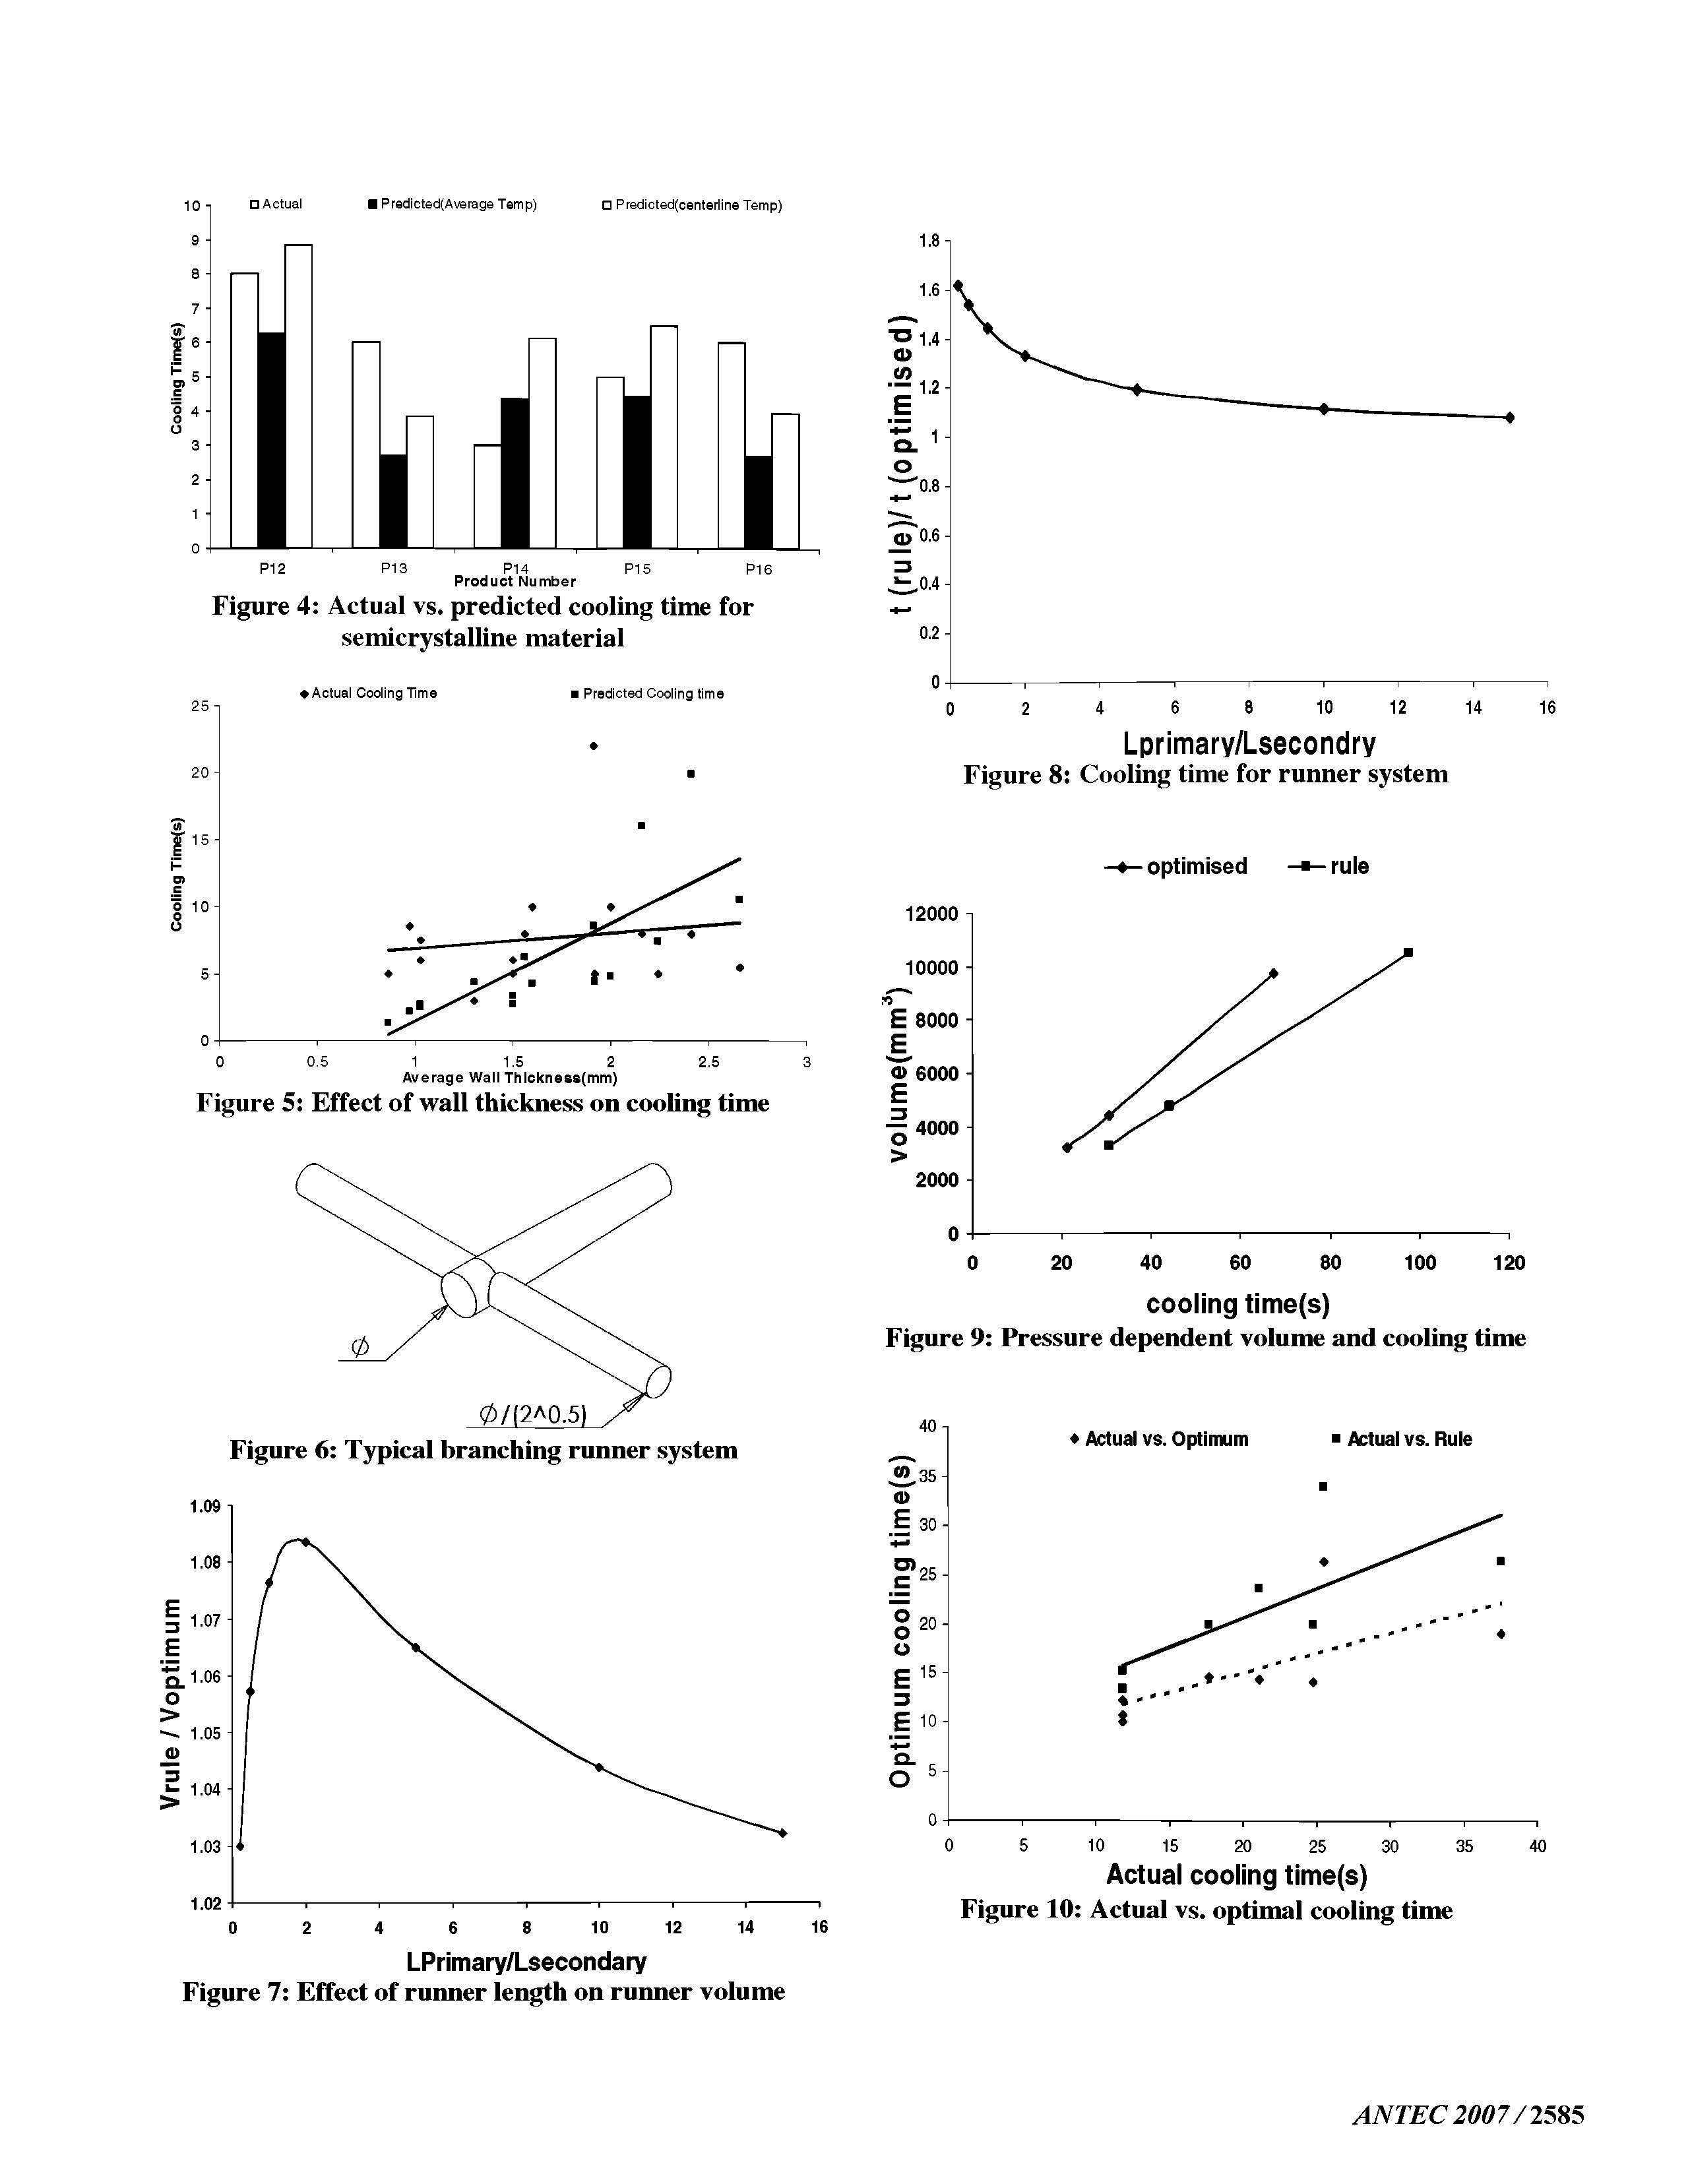 Figure 7 Effect of runner length on runner volume...